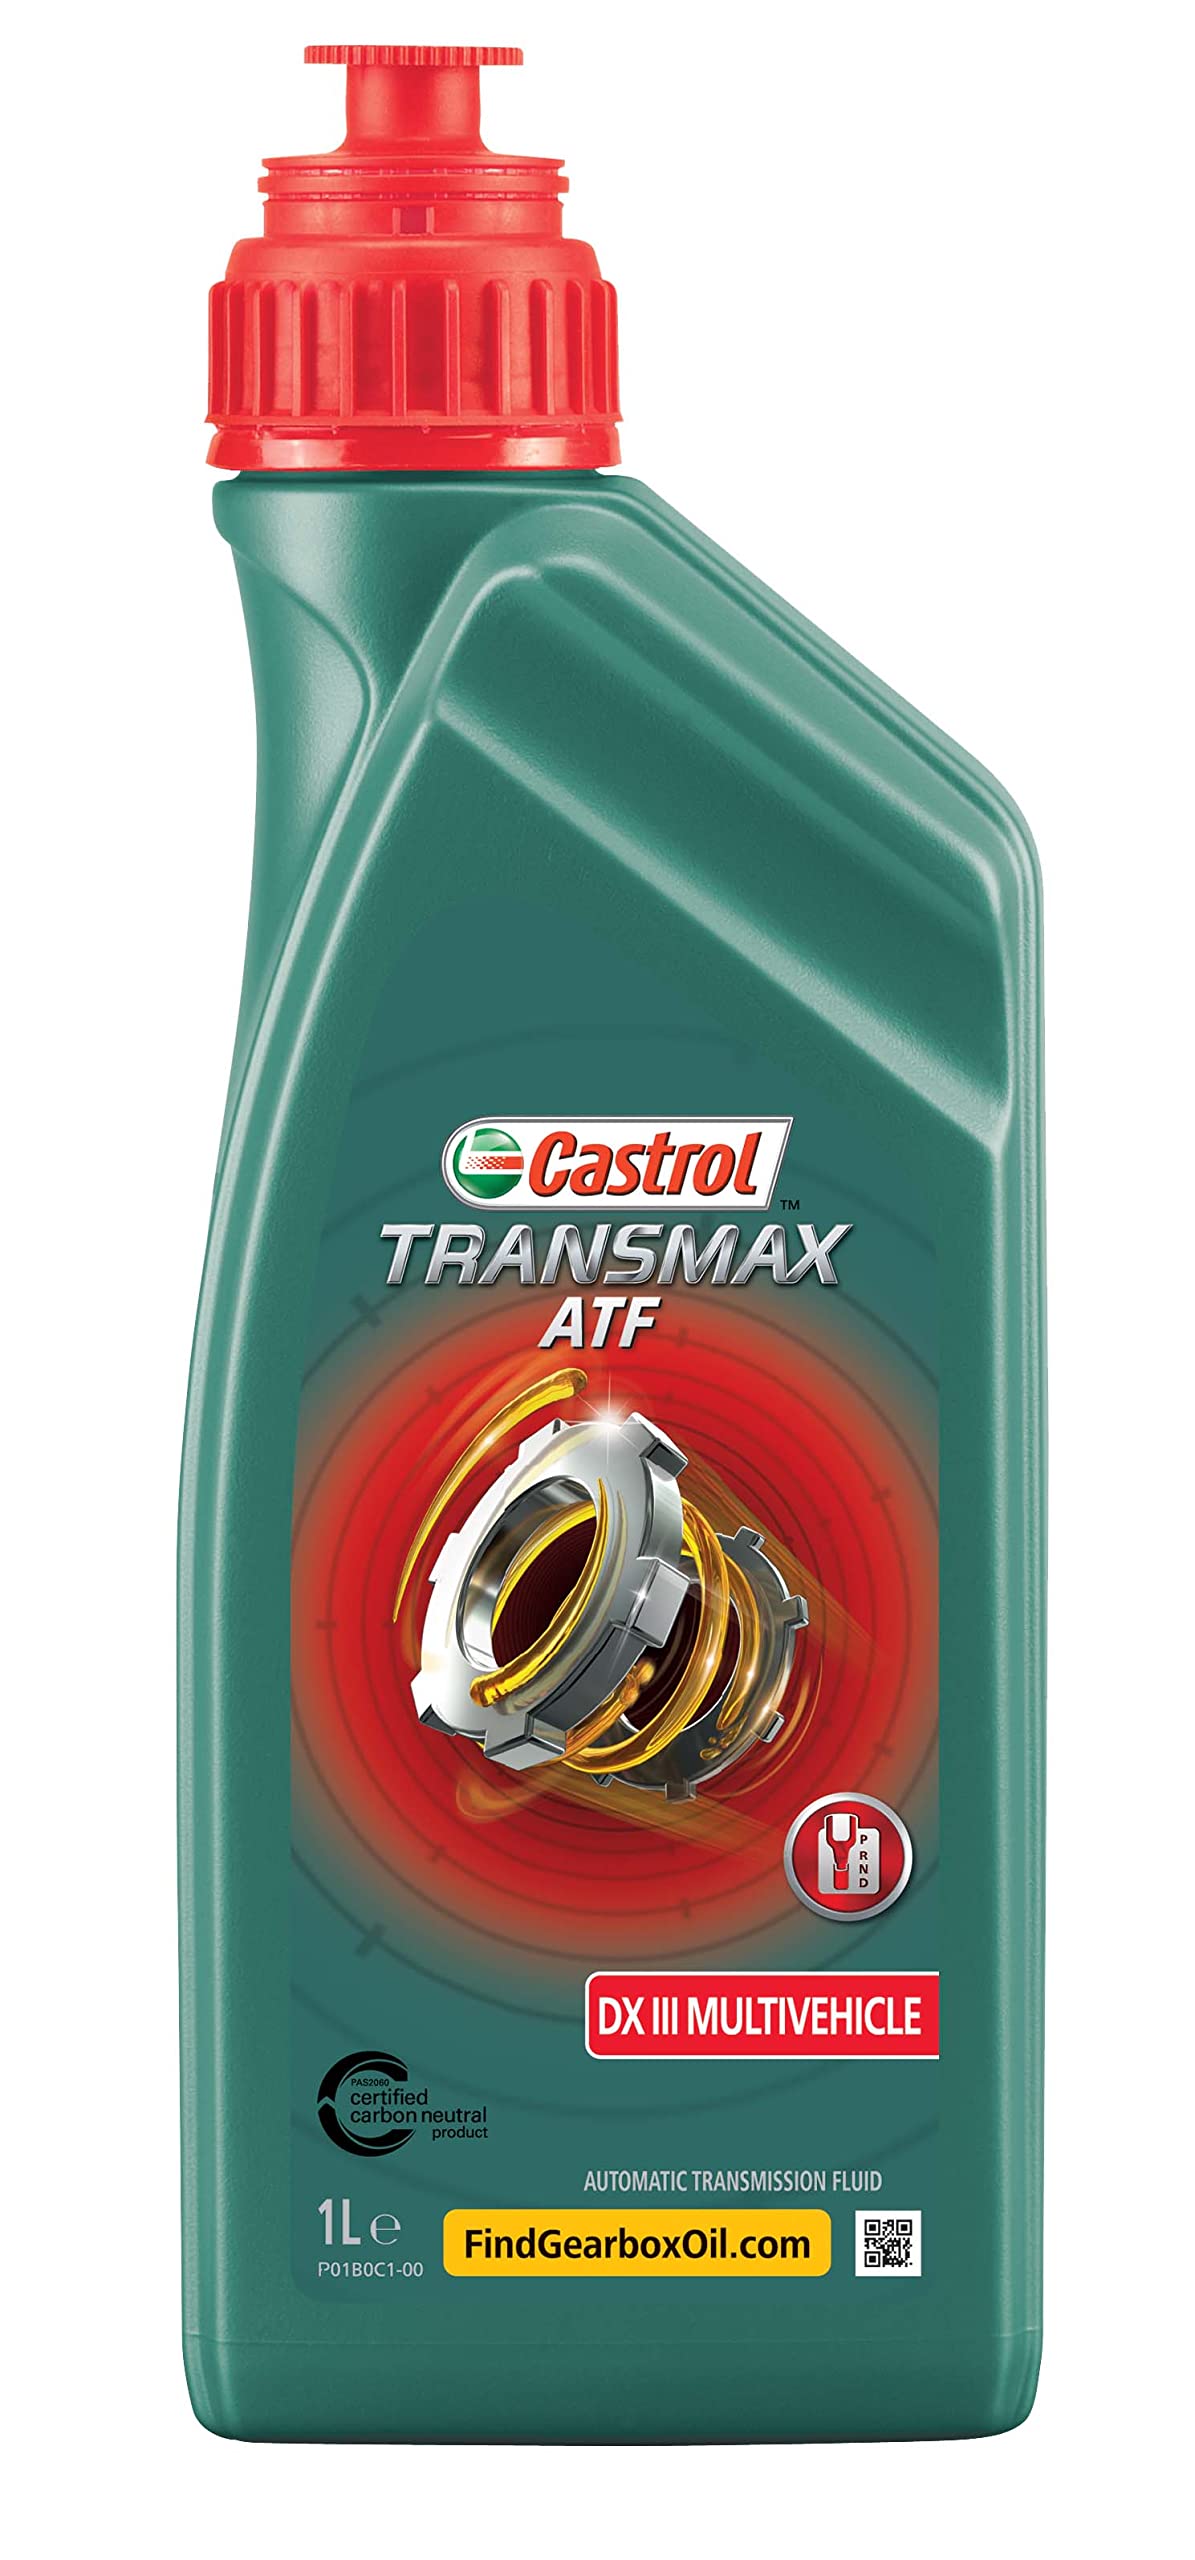 Castrol TRANSMAX ATF DX III Multivehicle, 1 Liter von Castrol